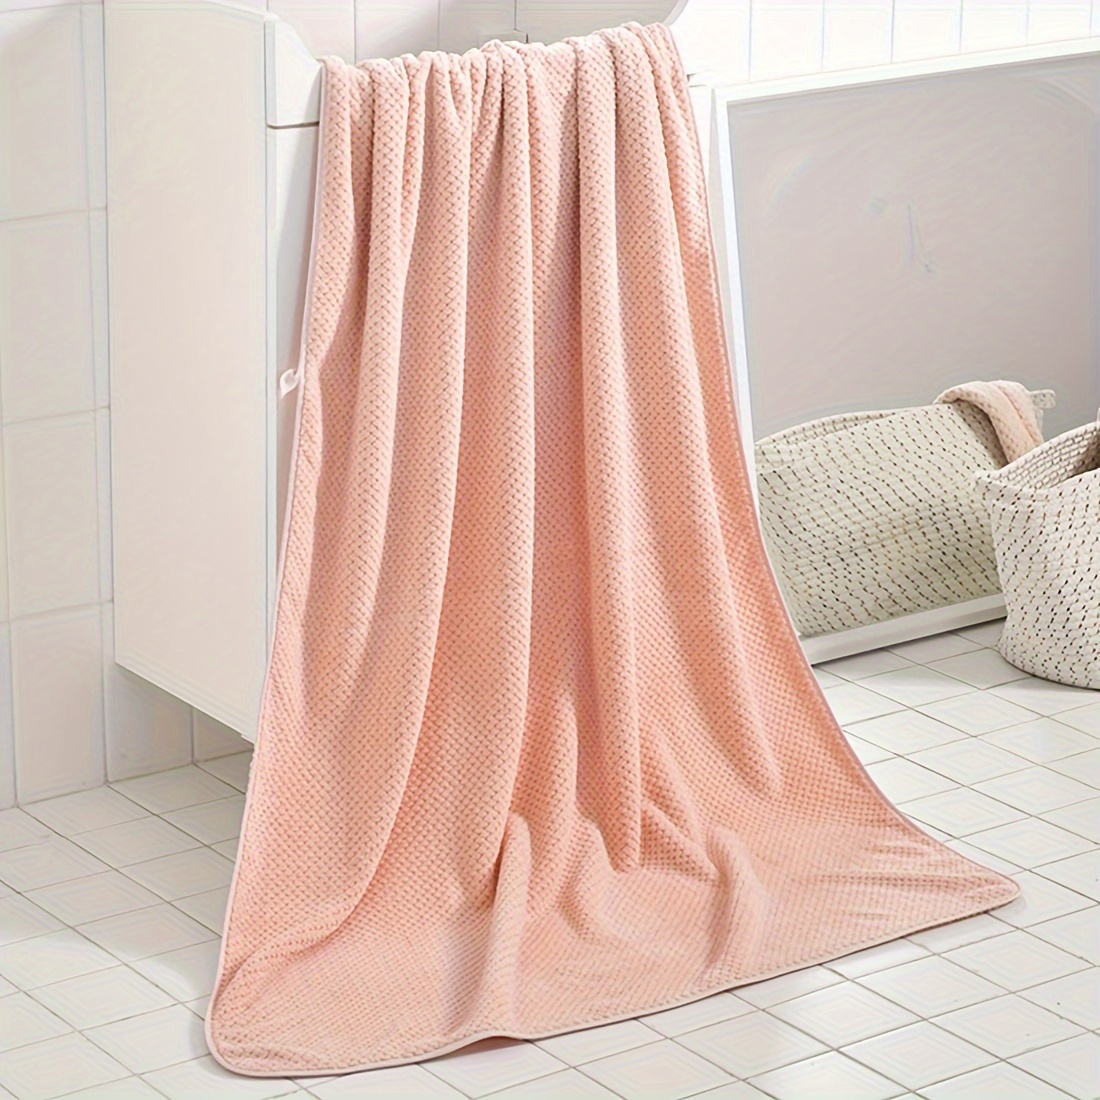  MKOJU Toallas de algodón puro súper absorbente, toalla grande  para baño, ducha, toallas de viaje suaves y cómodas (color D, tamaño: 13.4  x 29.1 in) : Hogar y Cocina